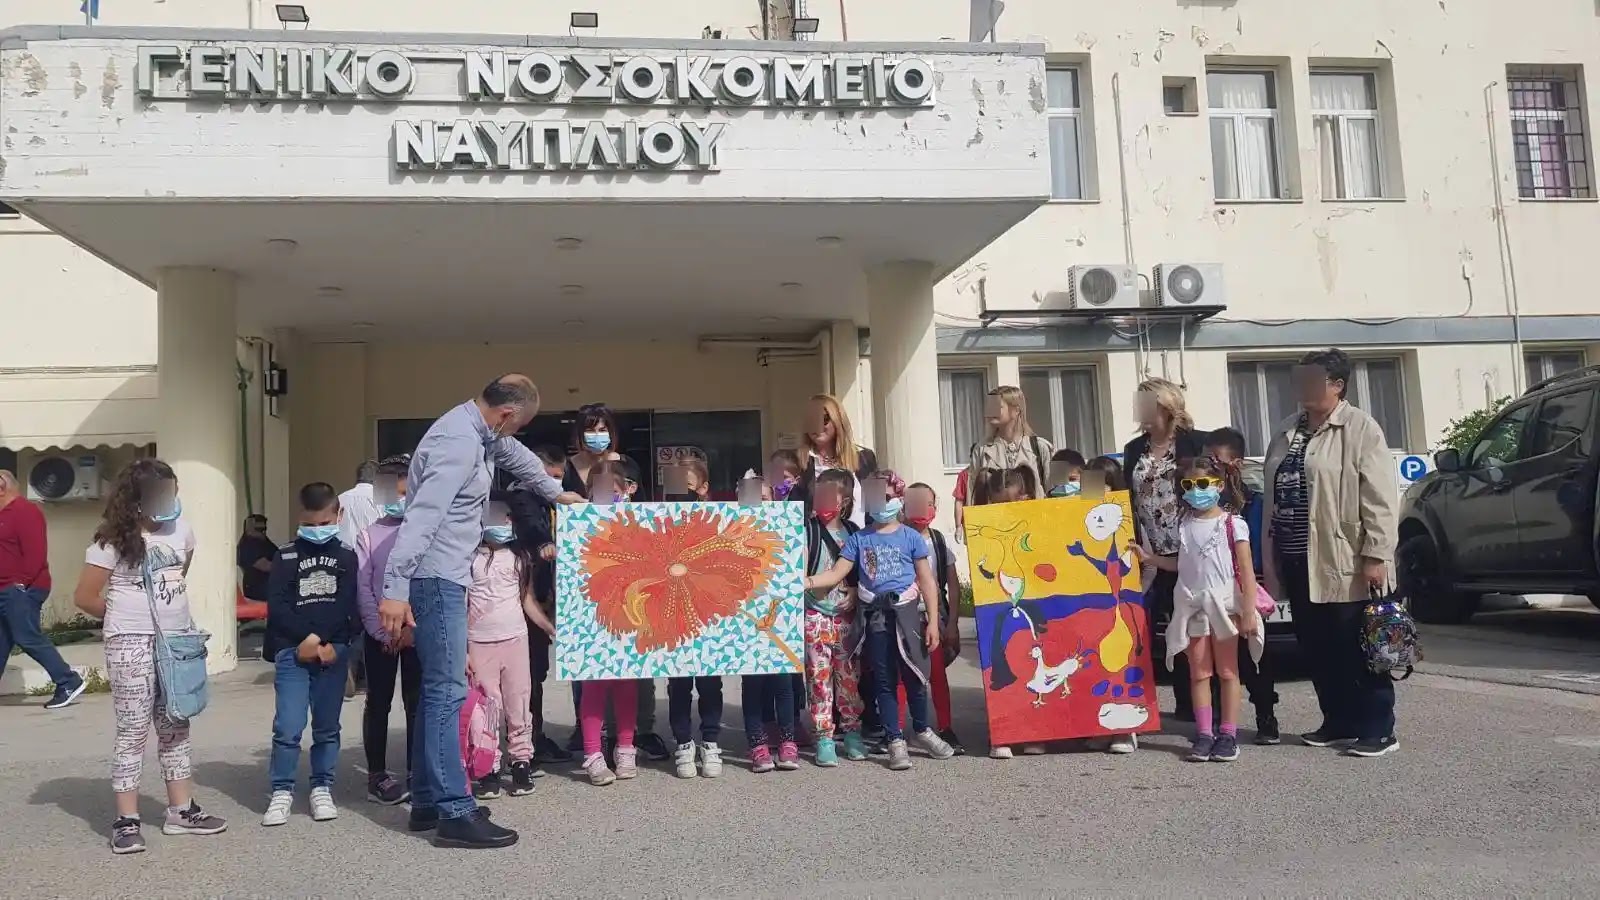 Μαθητές από το Σκαφιδάκι δώρισαν πίνακες στο νοσοκομείο Ναυπλίου